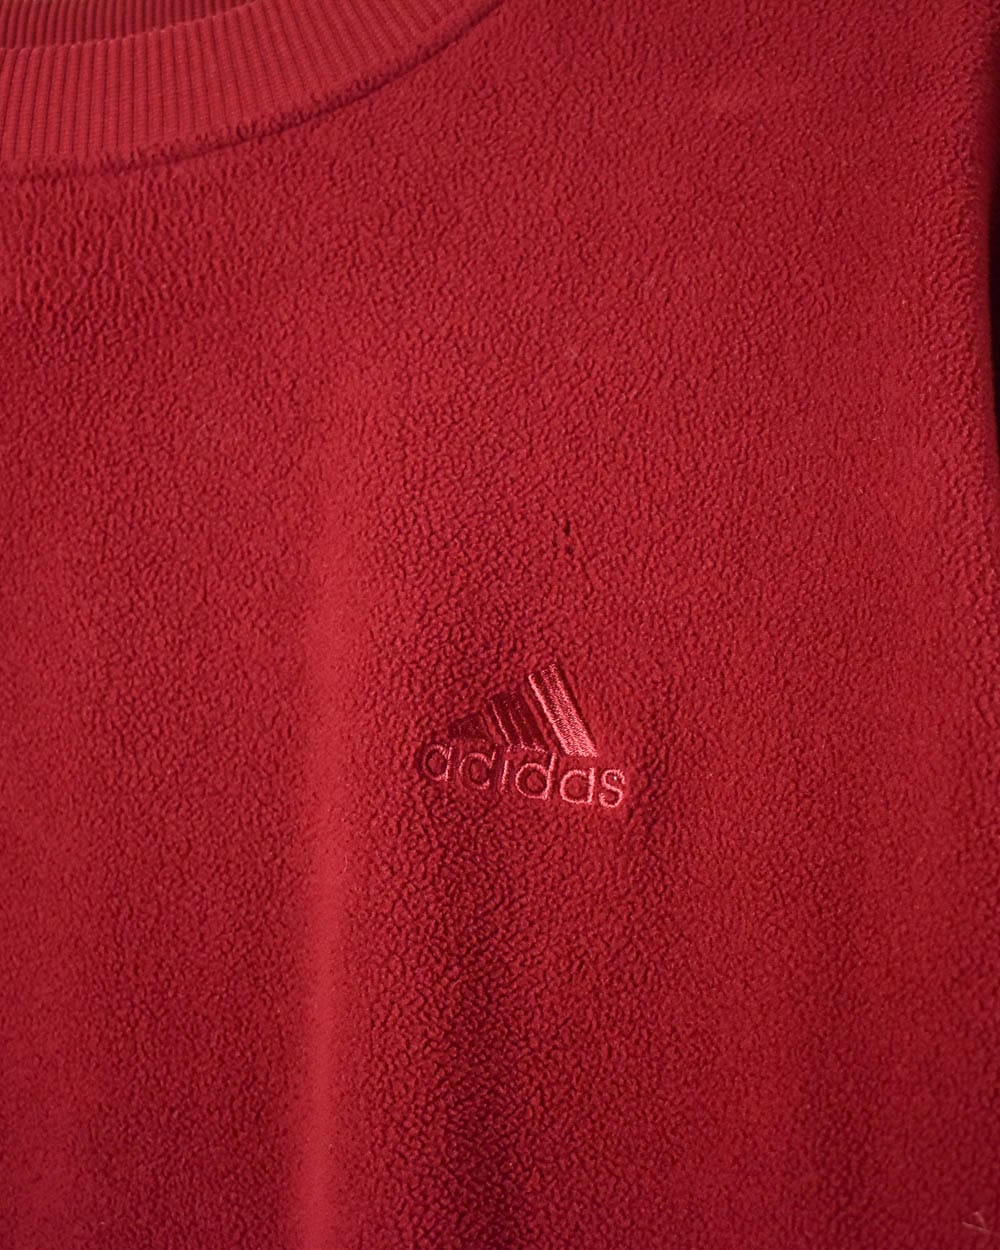 Red Adidas Fleece Sweatshirt - X-Large